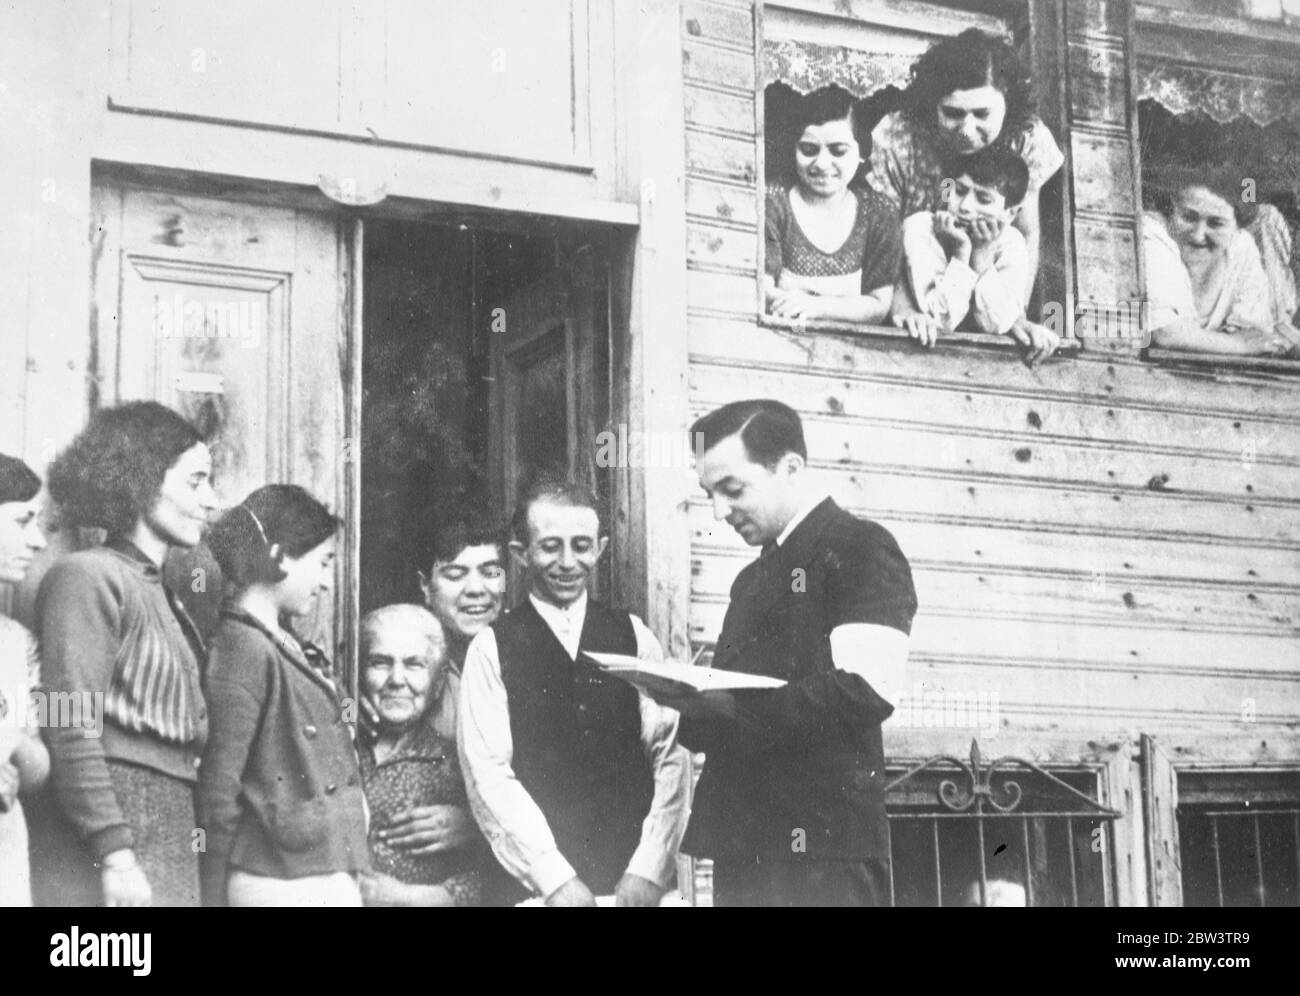 Toute la Turquie reste à l'intérieur pendant le recensement national . Un fonctionnaire du recensement prenant des détails à Istanbul . 23 octobre 1935 Banque D'Images